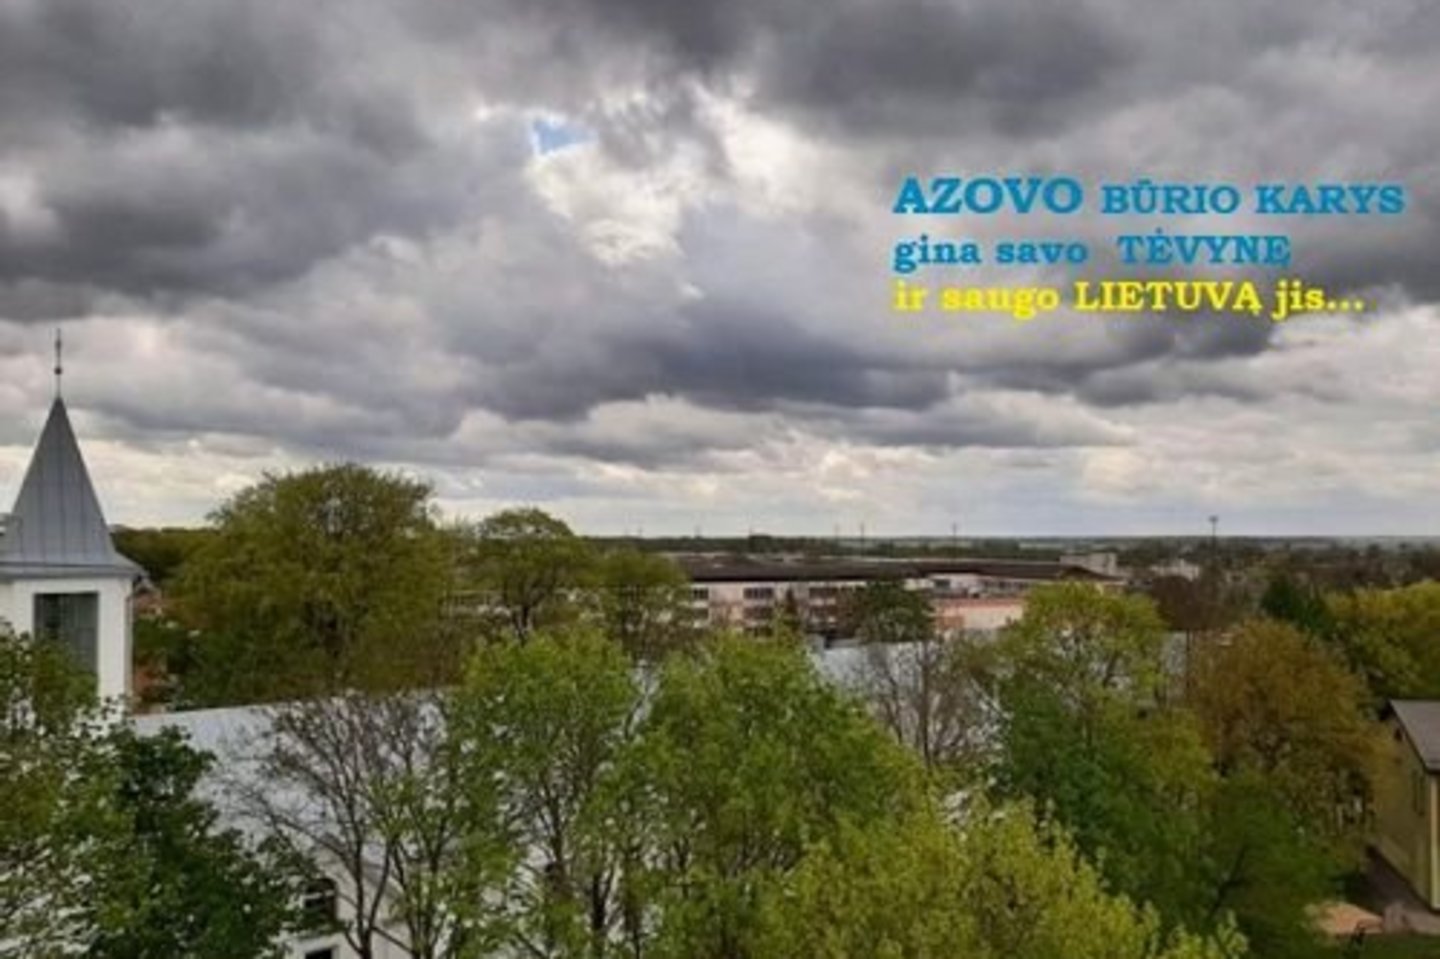 „Žiūrėdama į padarytą kadrą nustebau debesyse pamačiusi vaizdą, kuris man priminė „Azovo“ būrio kario veidą...“ - rašė skaitytoja.